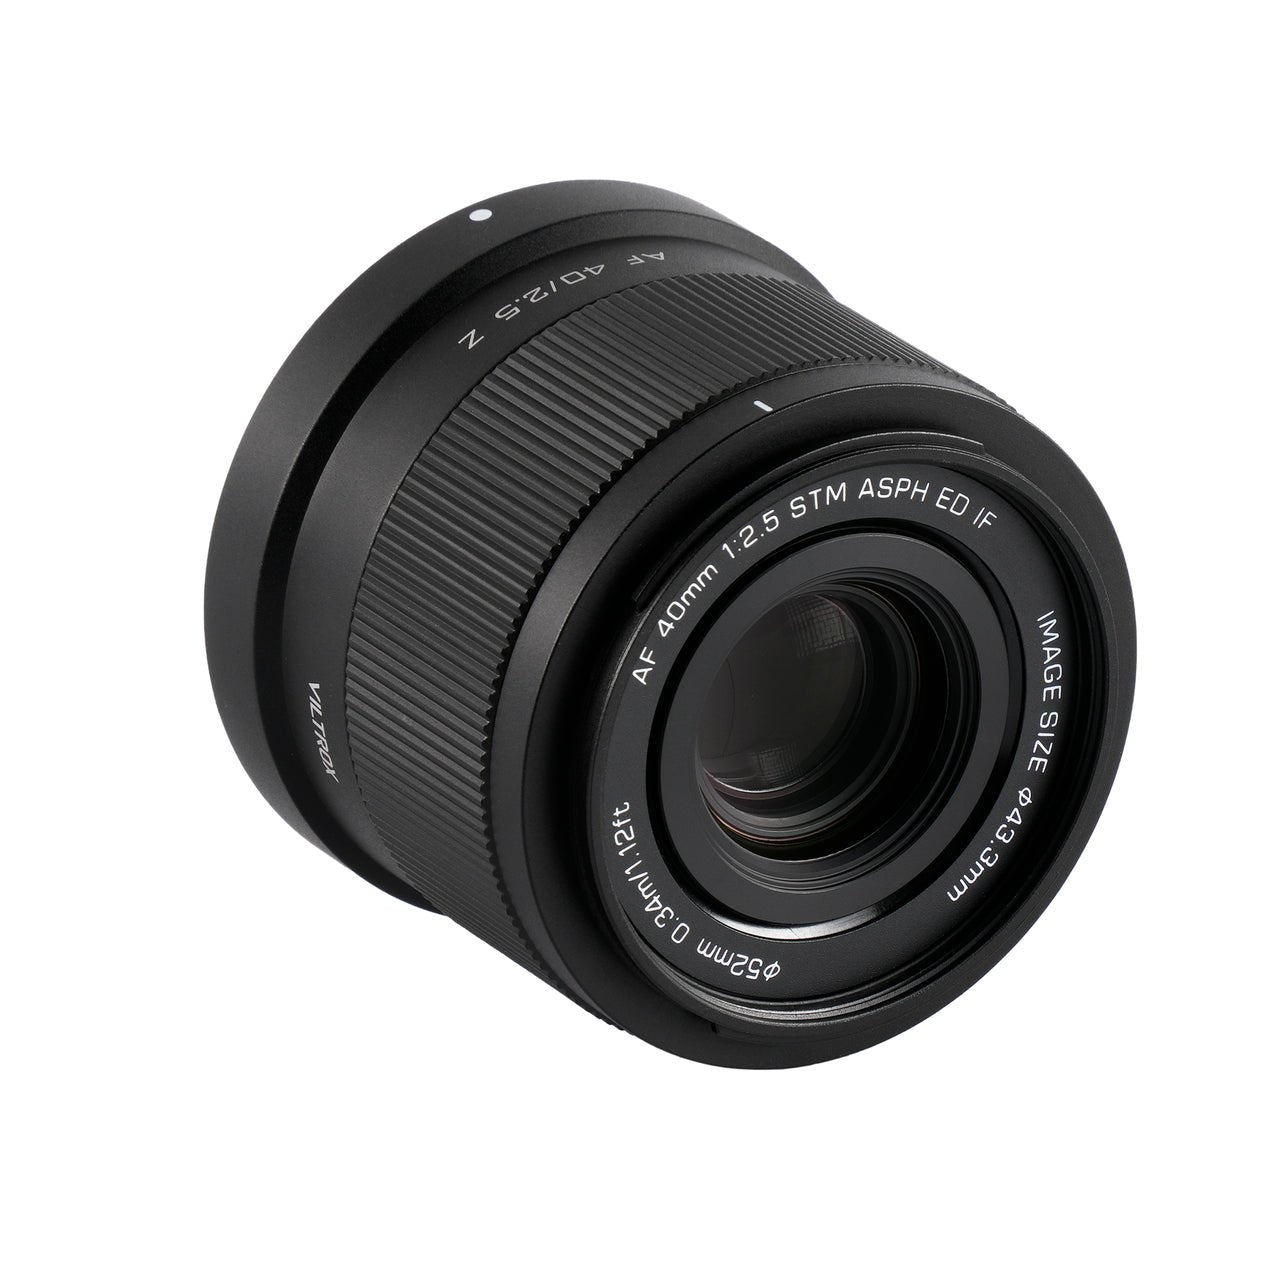 Viltrox AF 40mm f/2.5 Z Lens (Nikon Z)